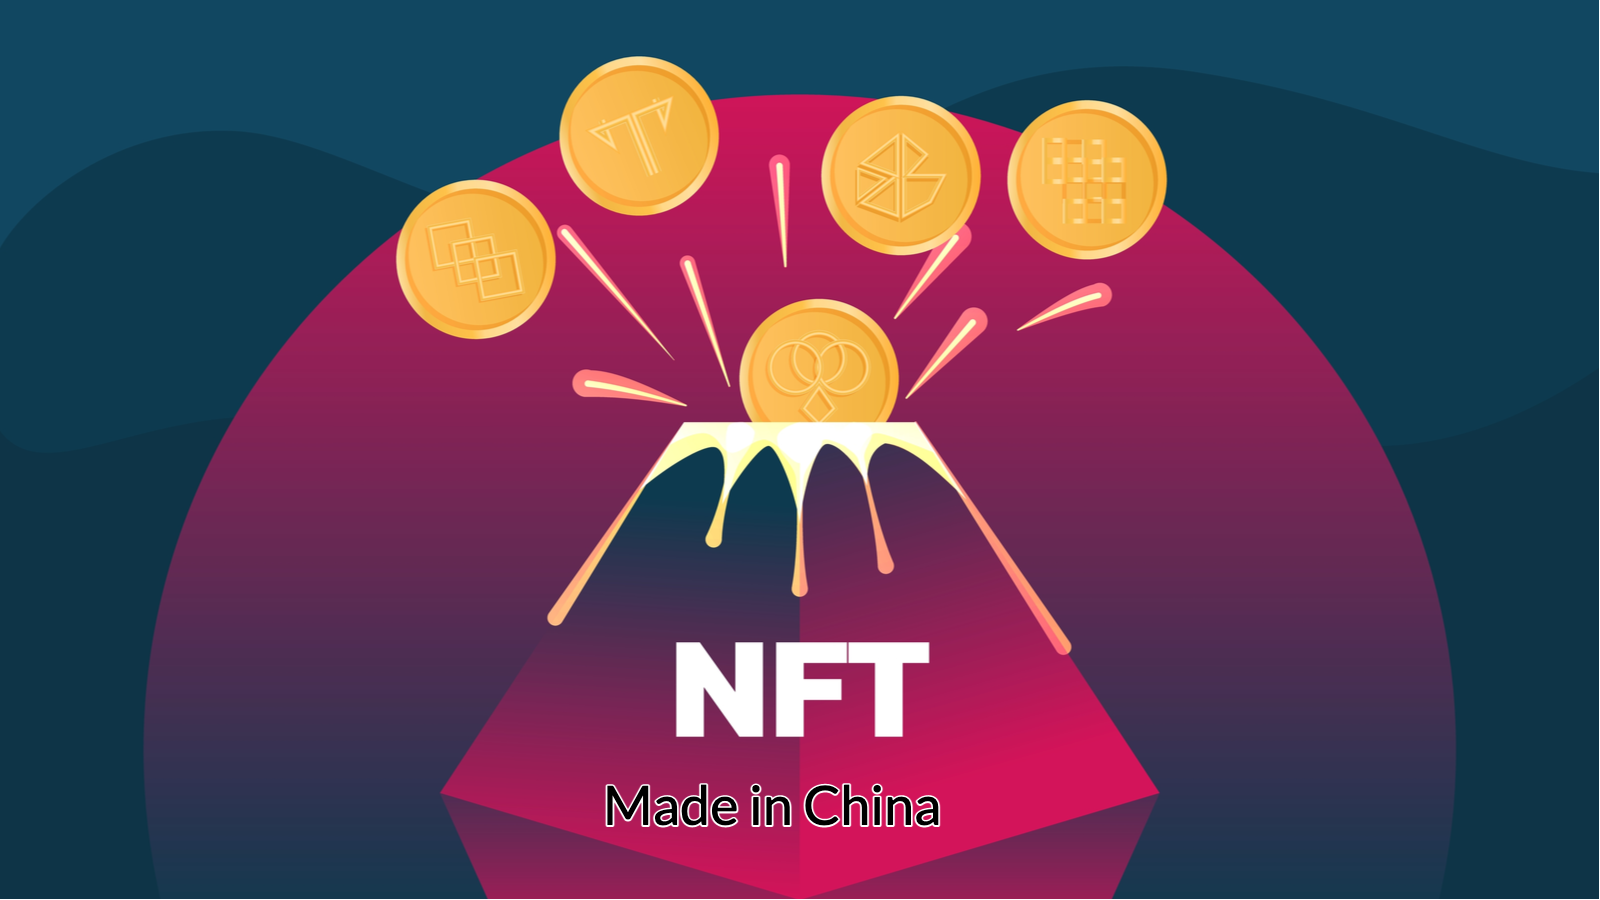 Les NFT sont chauds en Chine